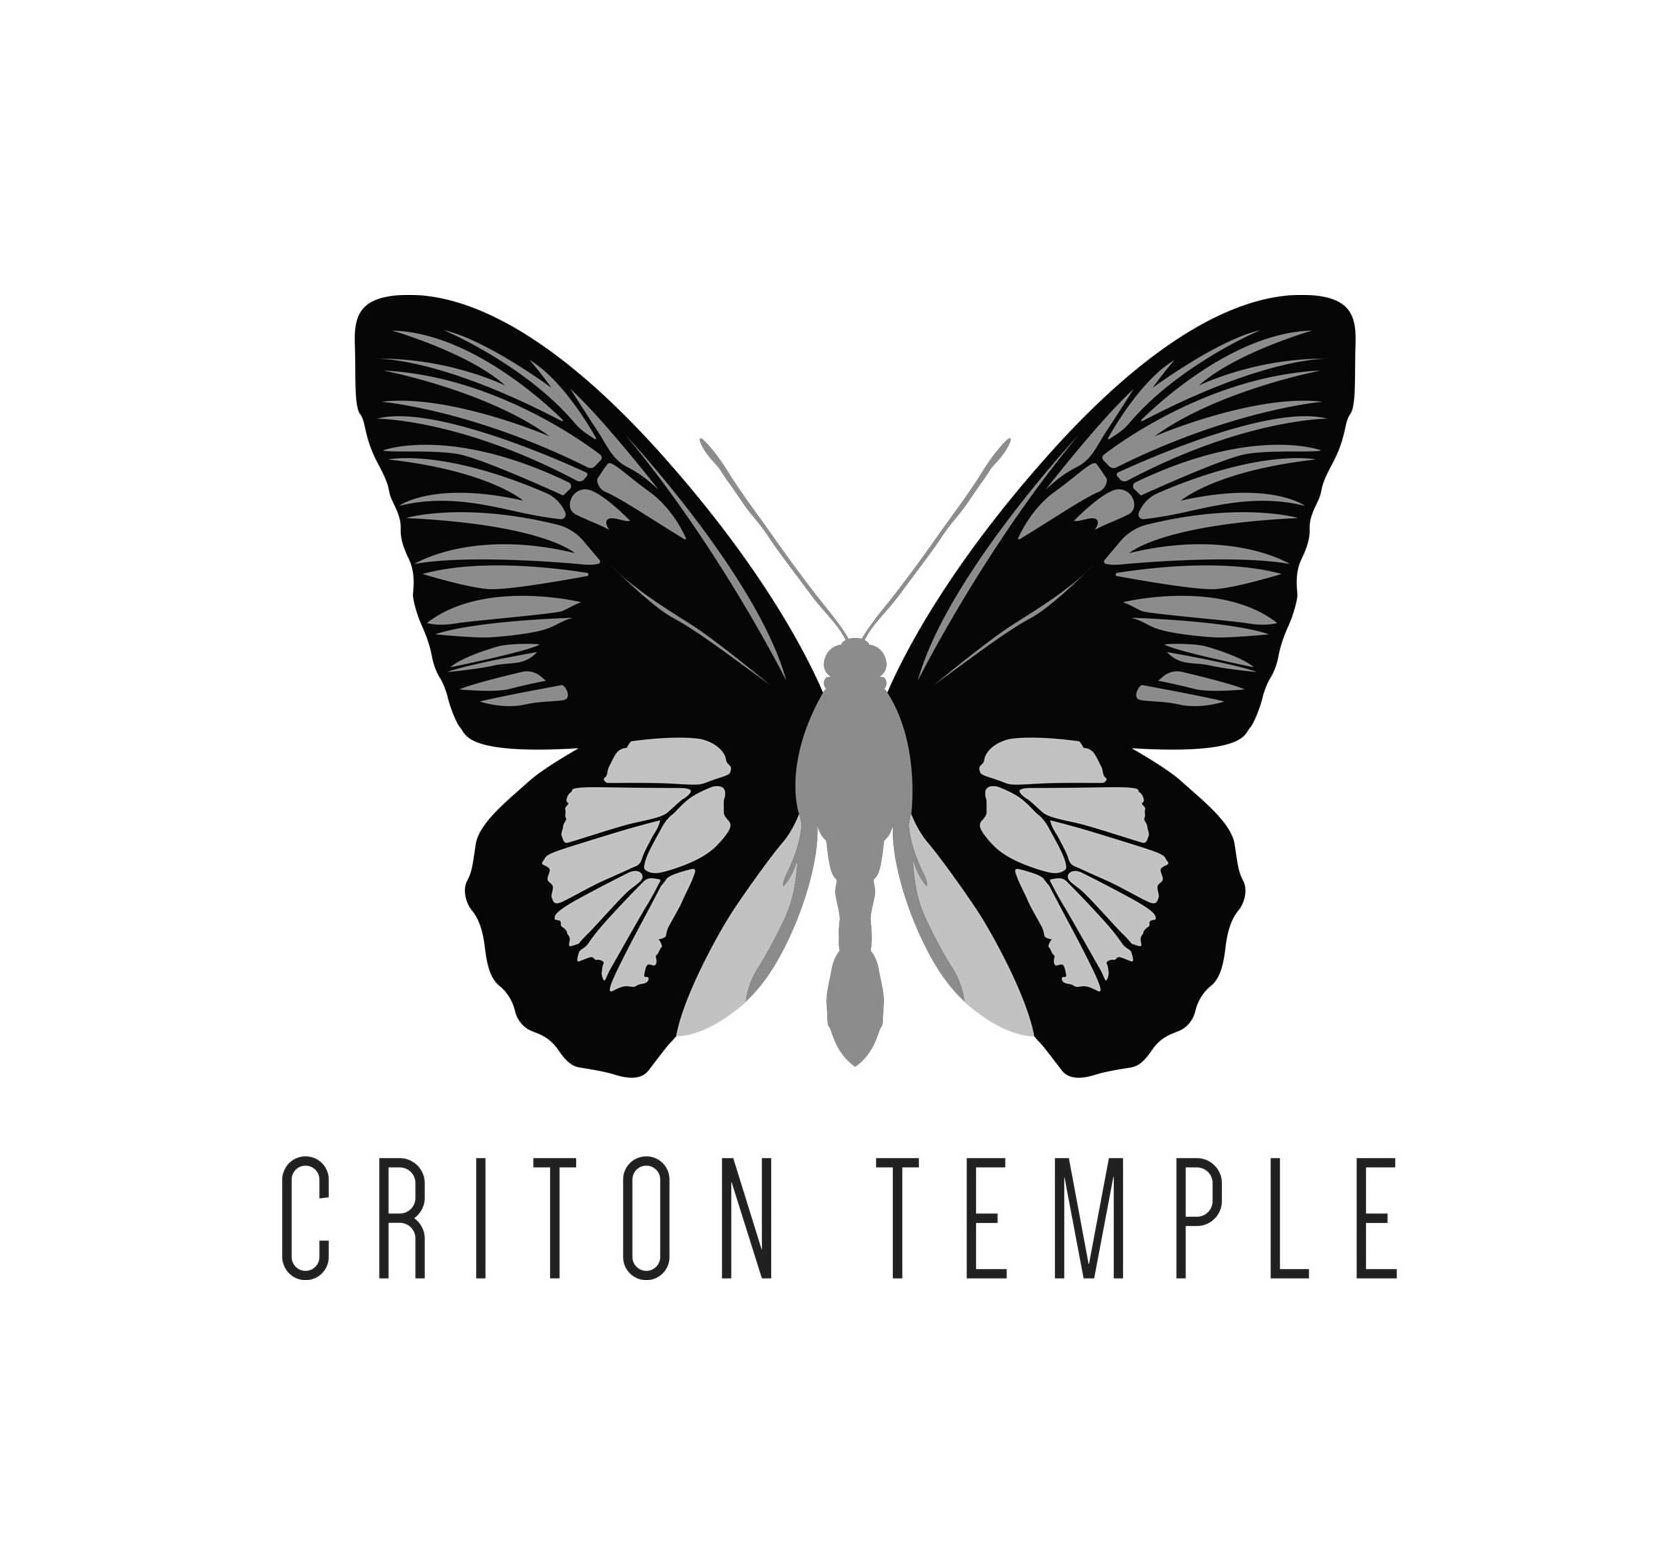  CRITON TEMPLE